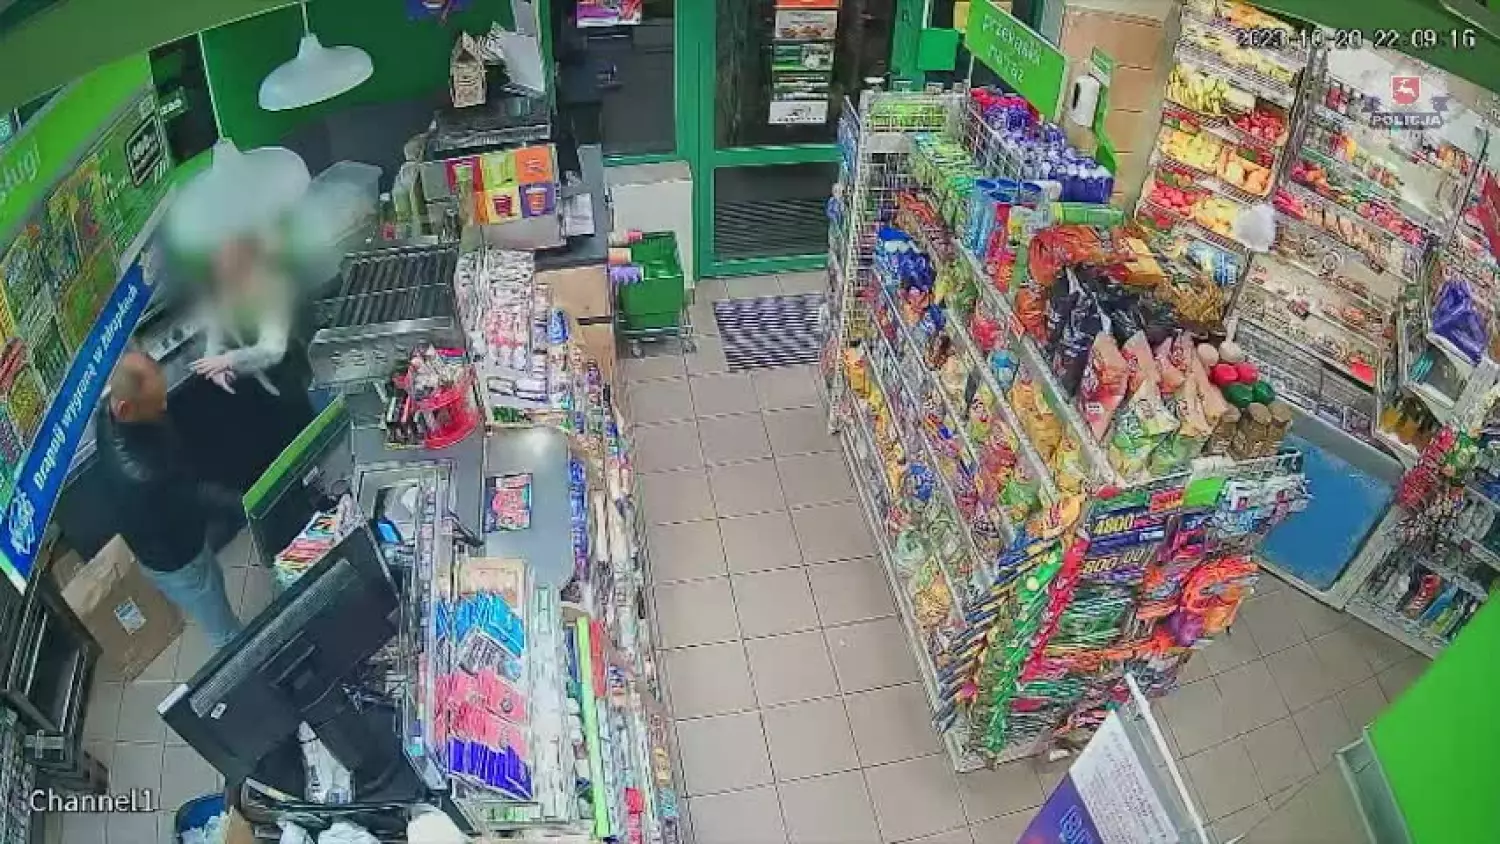 Próbował dokonać napadu w sklepie. Kto go rozpoznaje?